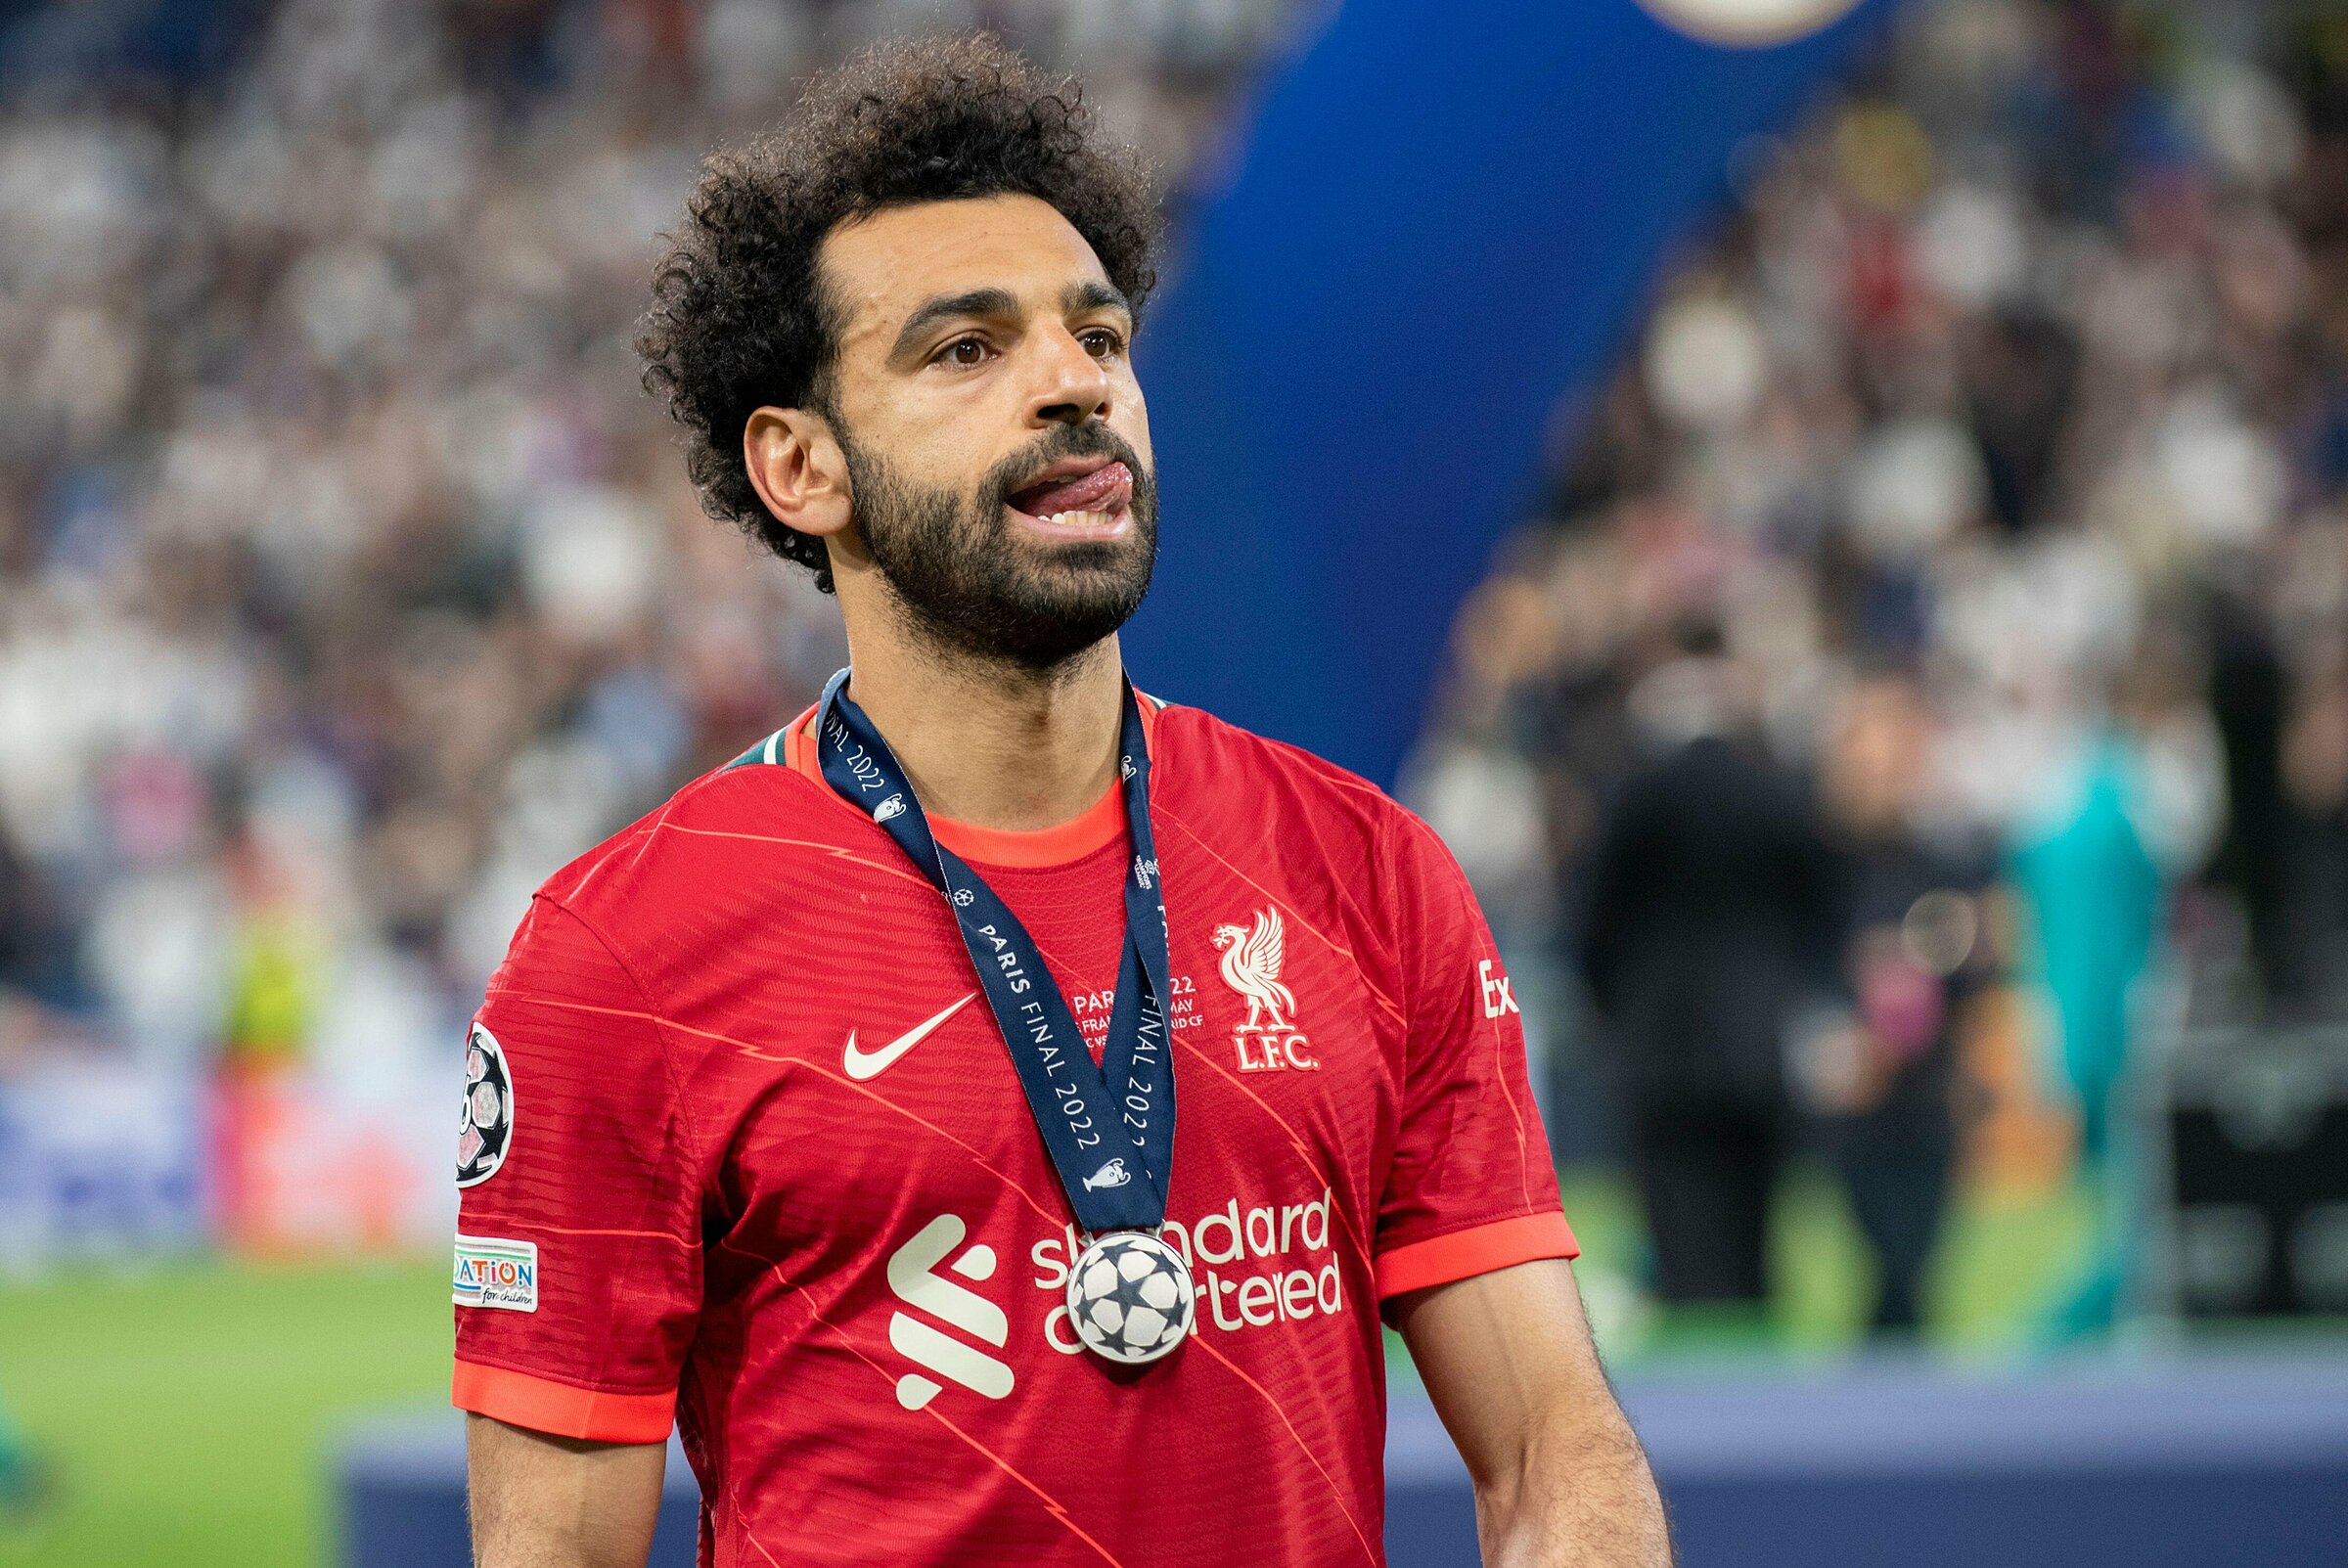 Liệu Salah có đánh đổi vinh quang tại Liverpool để lấy tiền của Saudi Arabia?